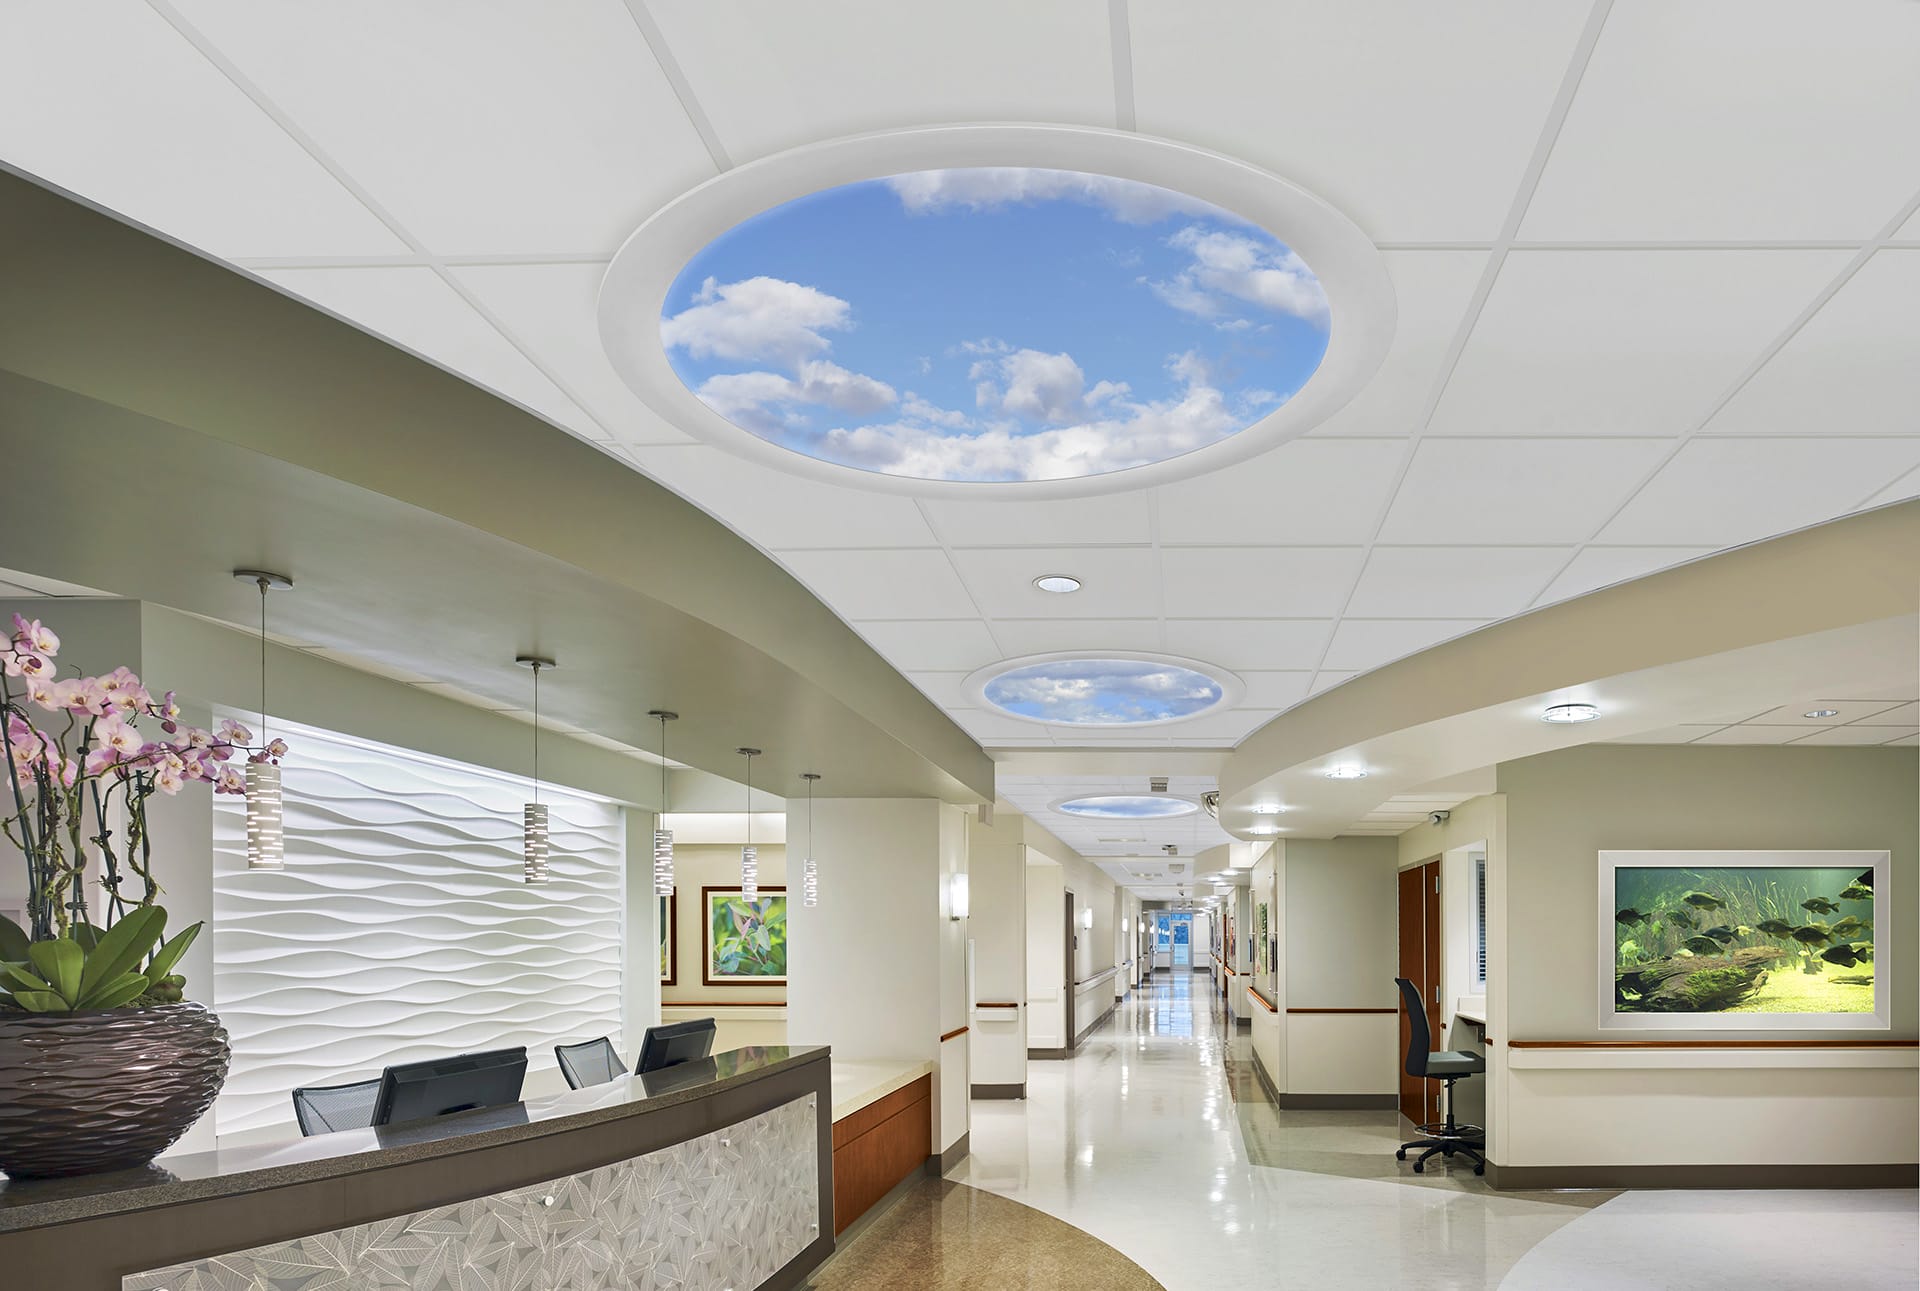 Aperture SkyCeilings in Hospital Hallway